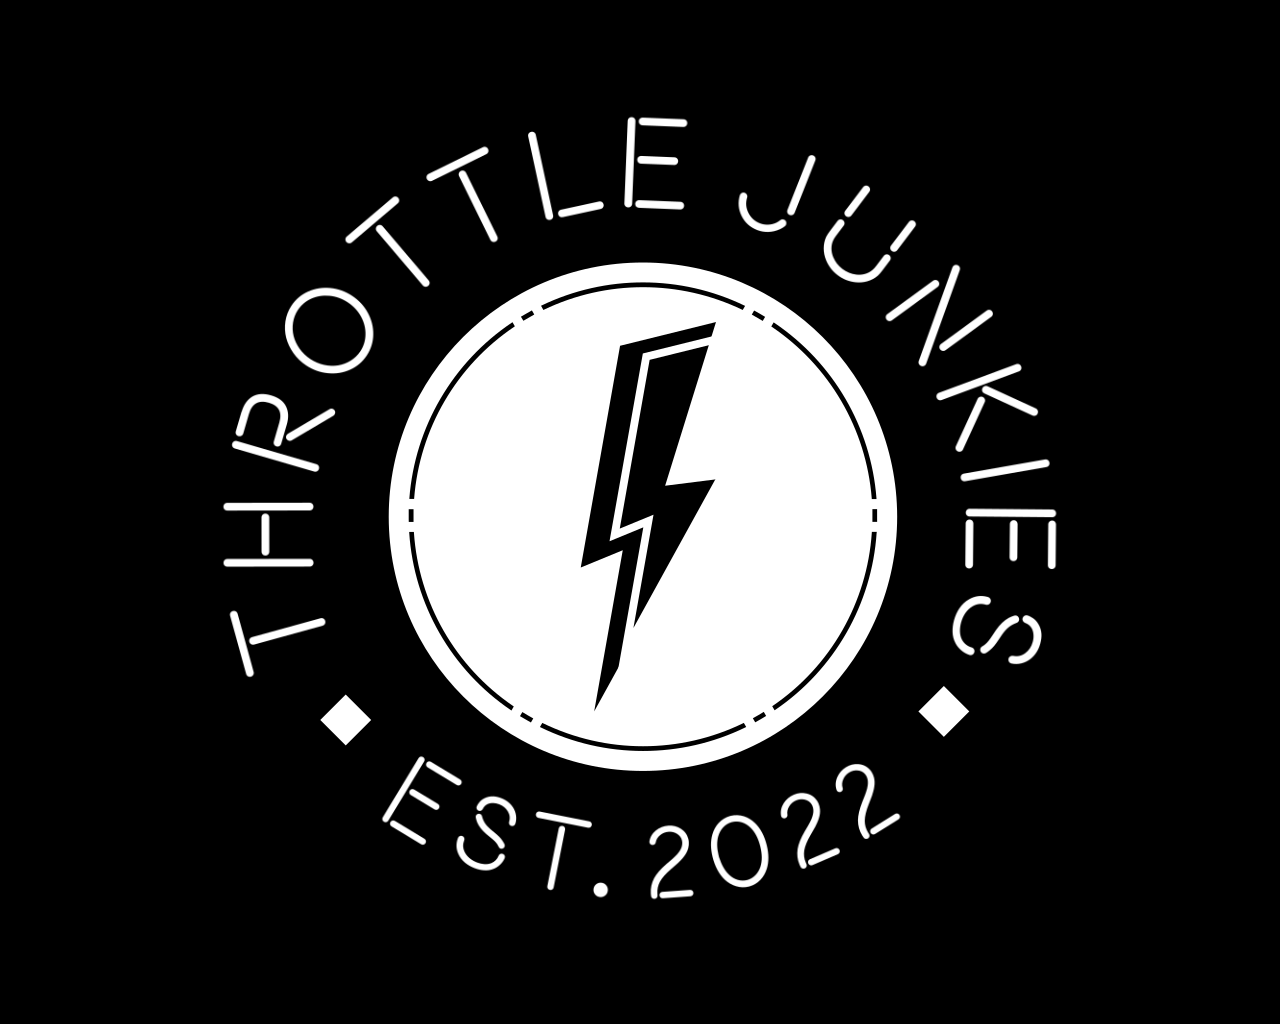 Throttle Junkies 's web page